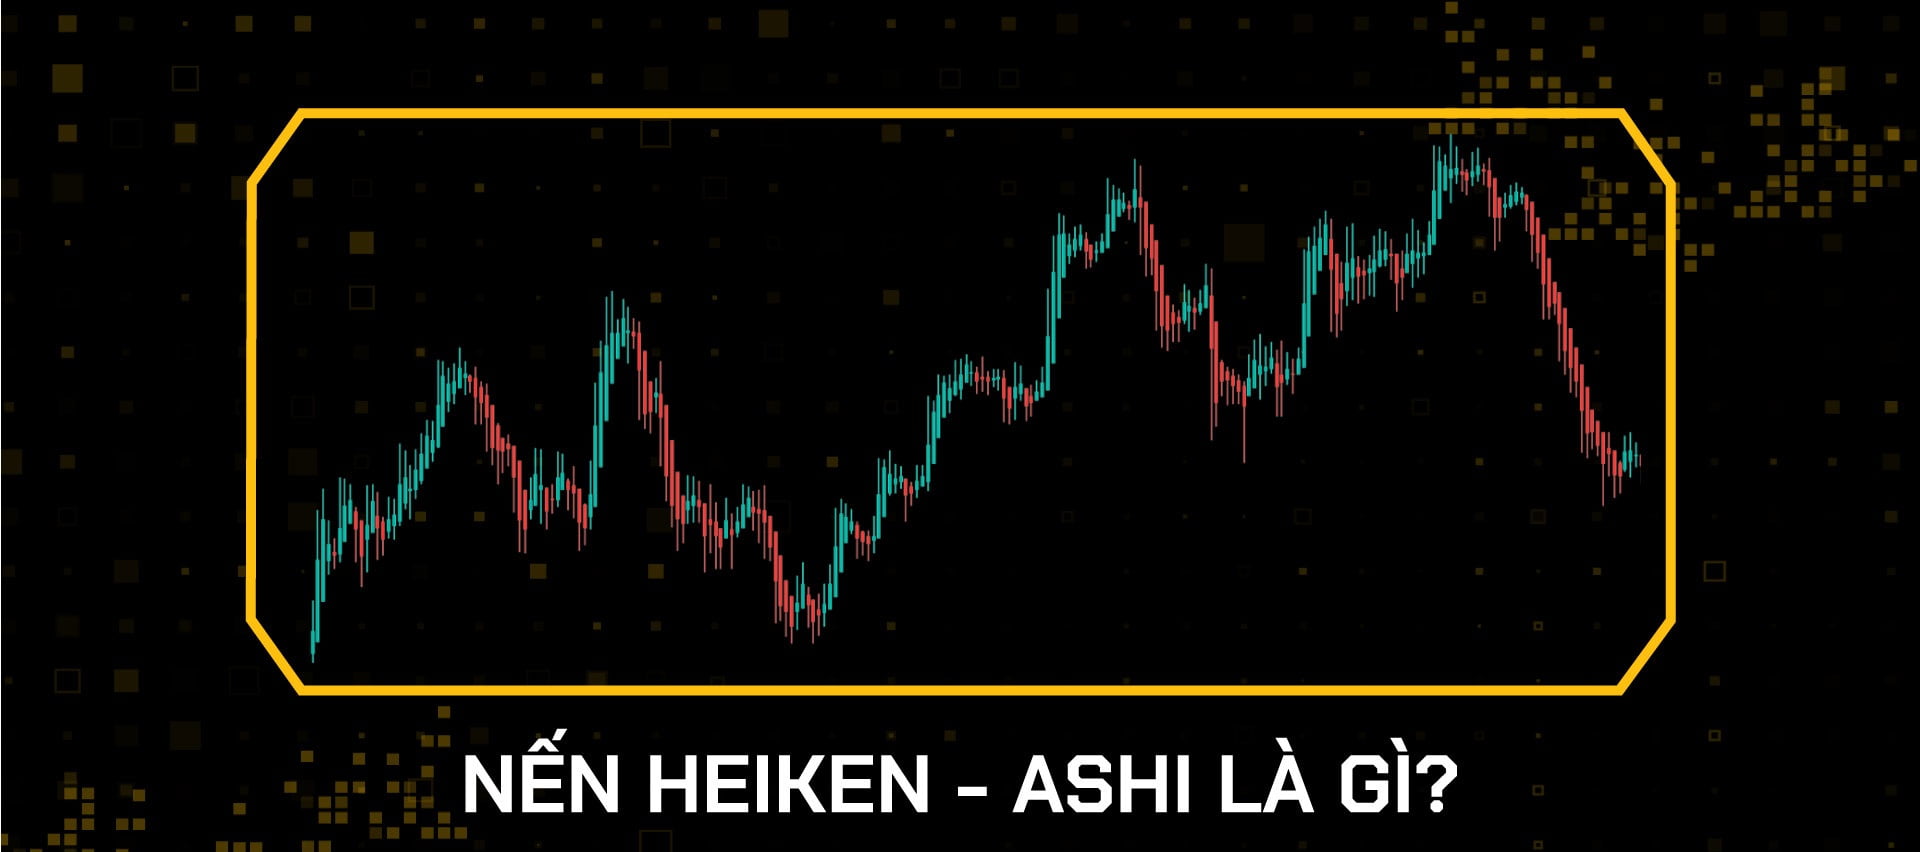 Nến Heiken Ashi rất quan trọng cho việc xác định xu hướng thị trường